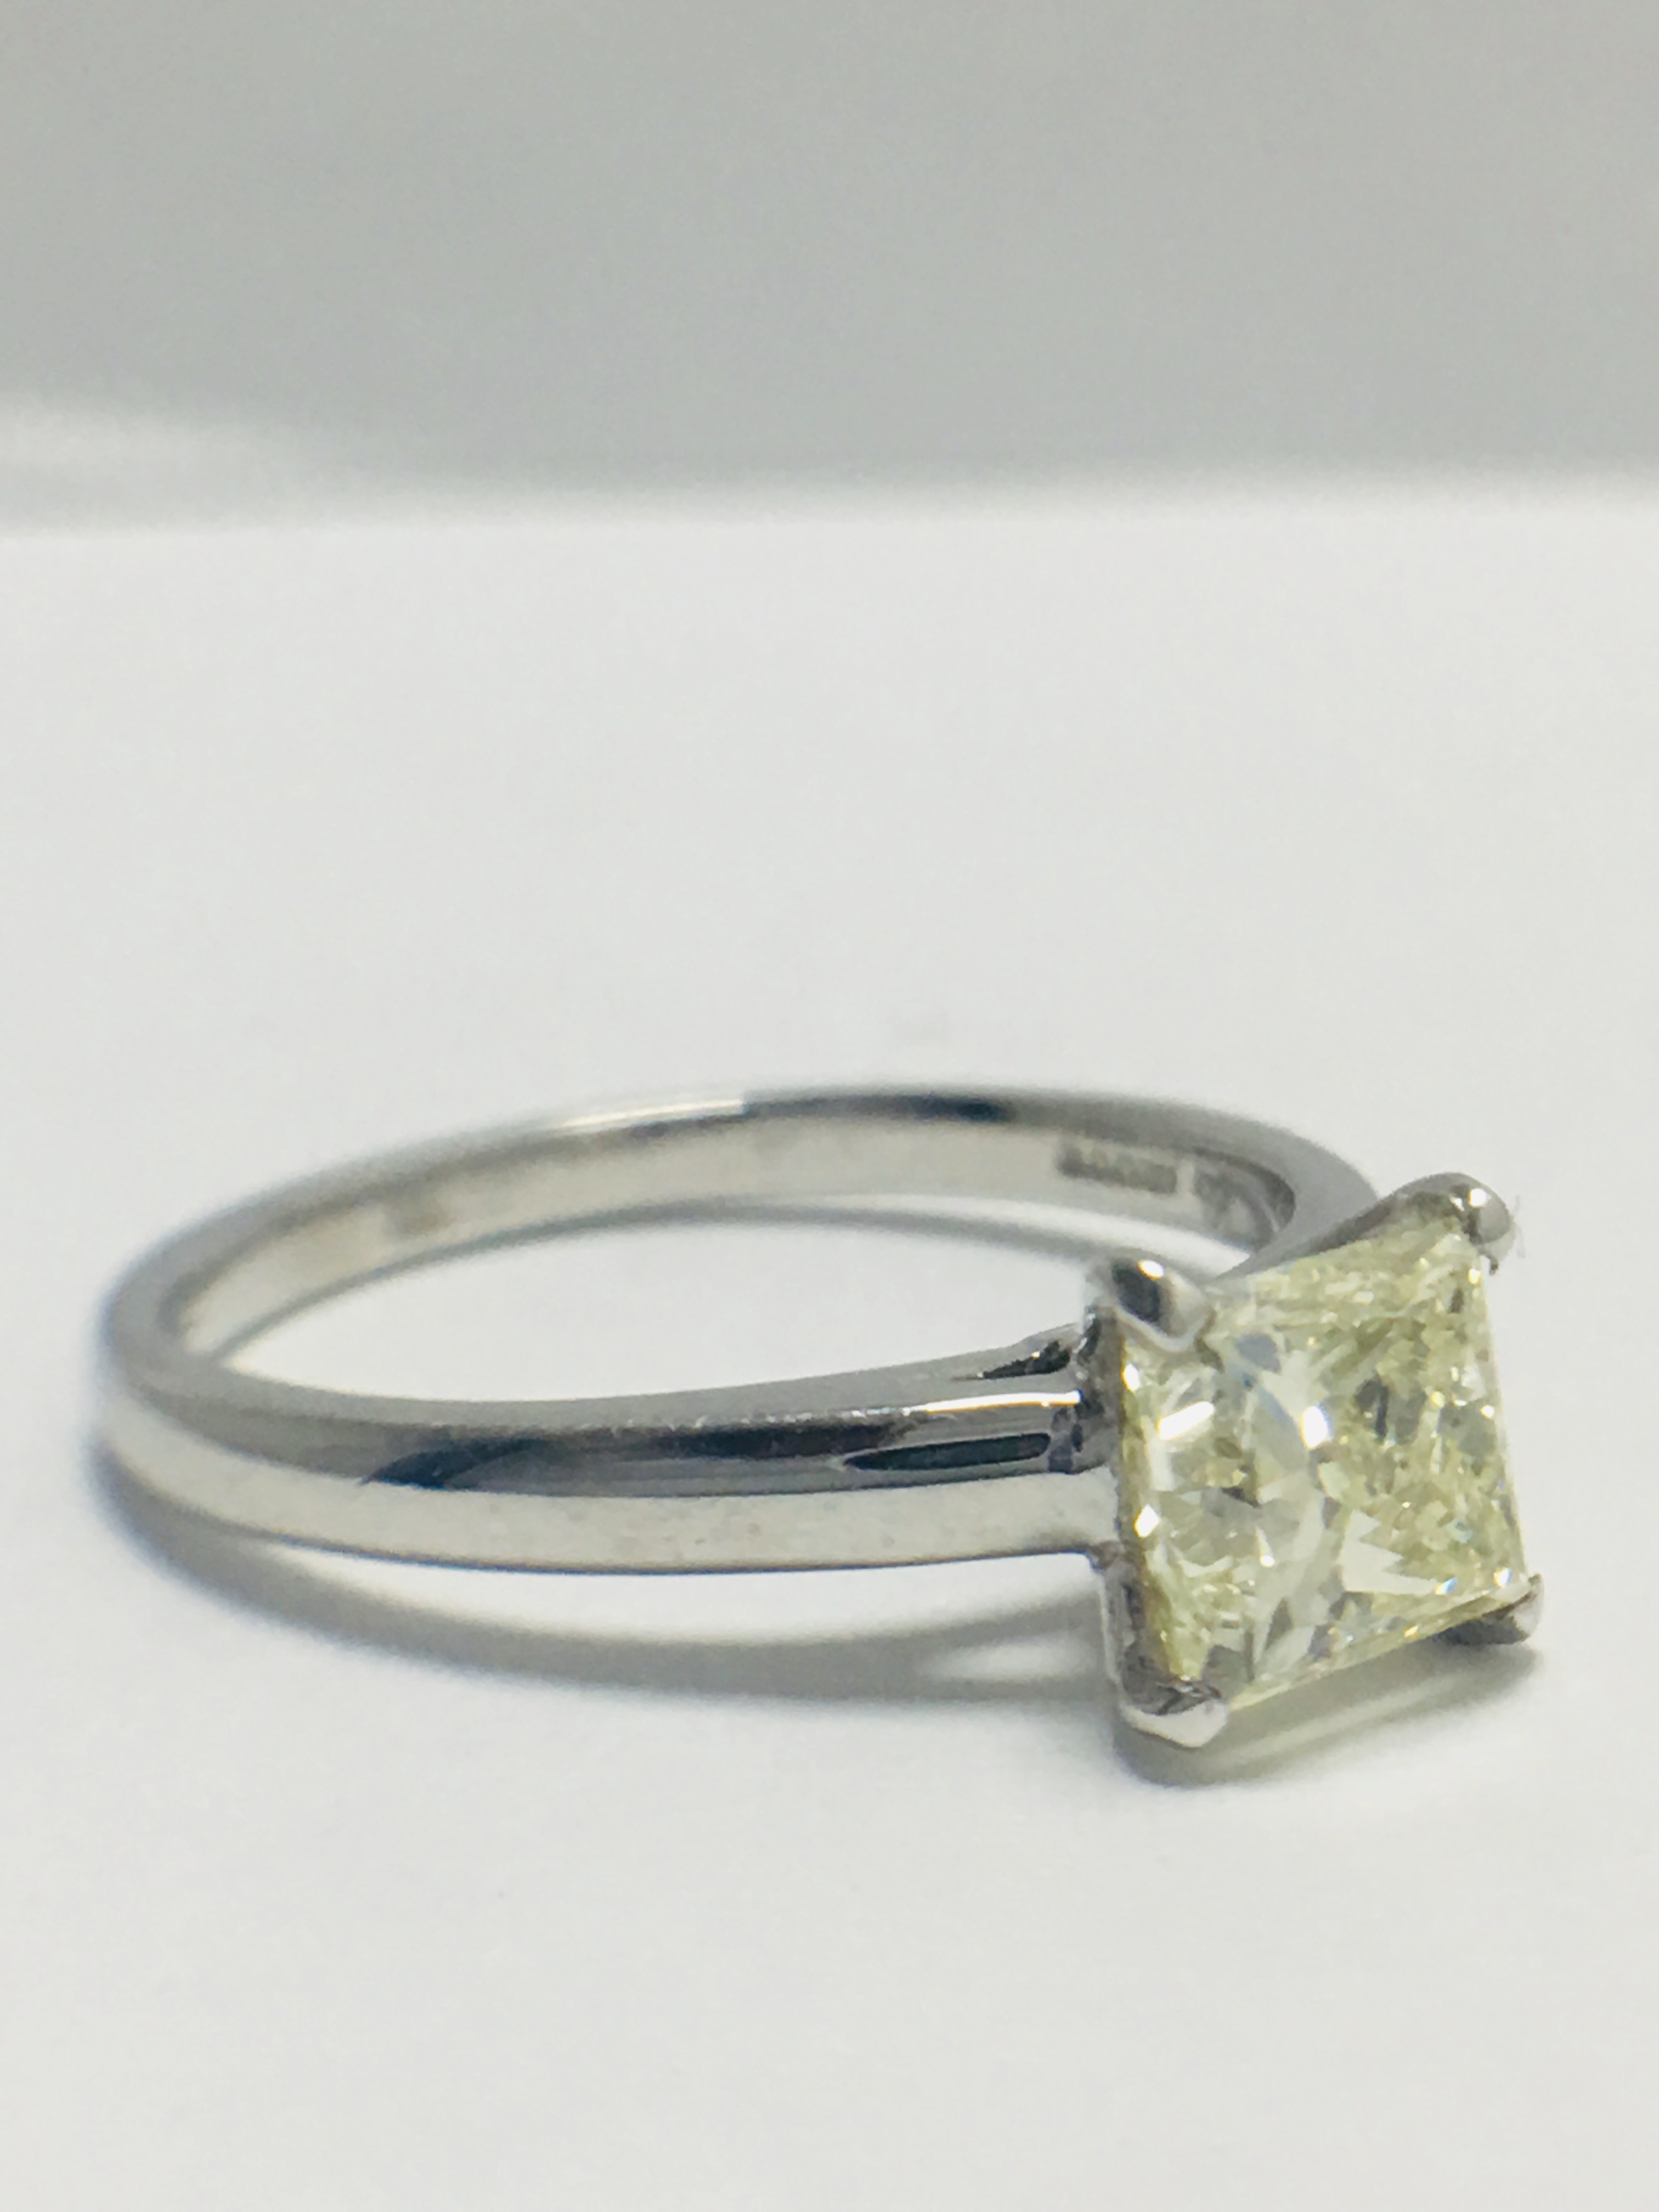 1ct platinum Diamond solitaire ring - Image 6 of 8